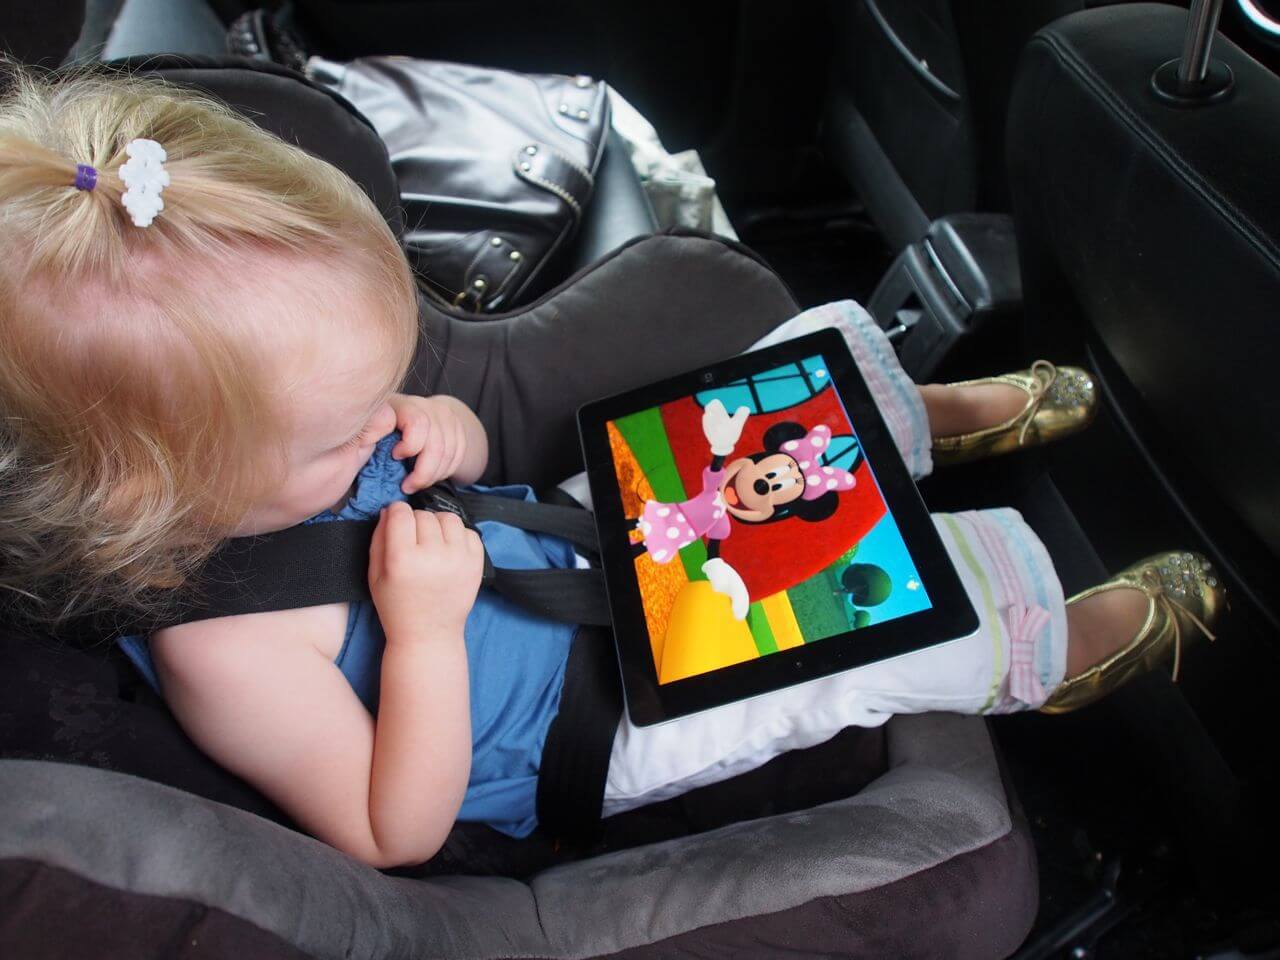 Планшет развлечения. Ребенок с планшетом в машине. Планшет для детей в автомобиль. Развлечение для детей с машинами. Автомобиль для детей.